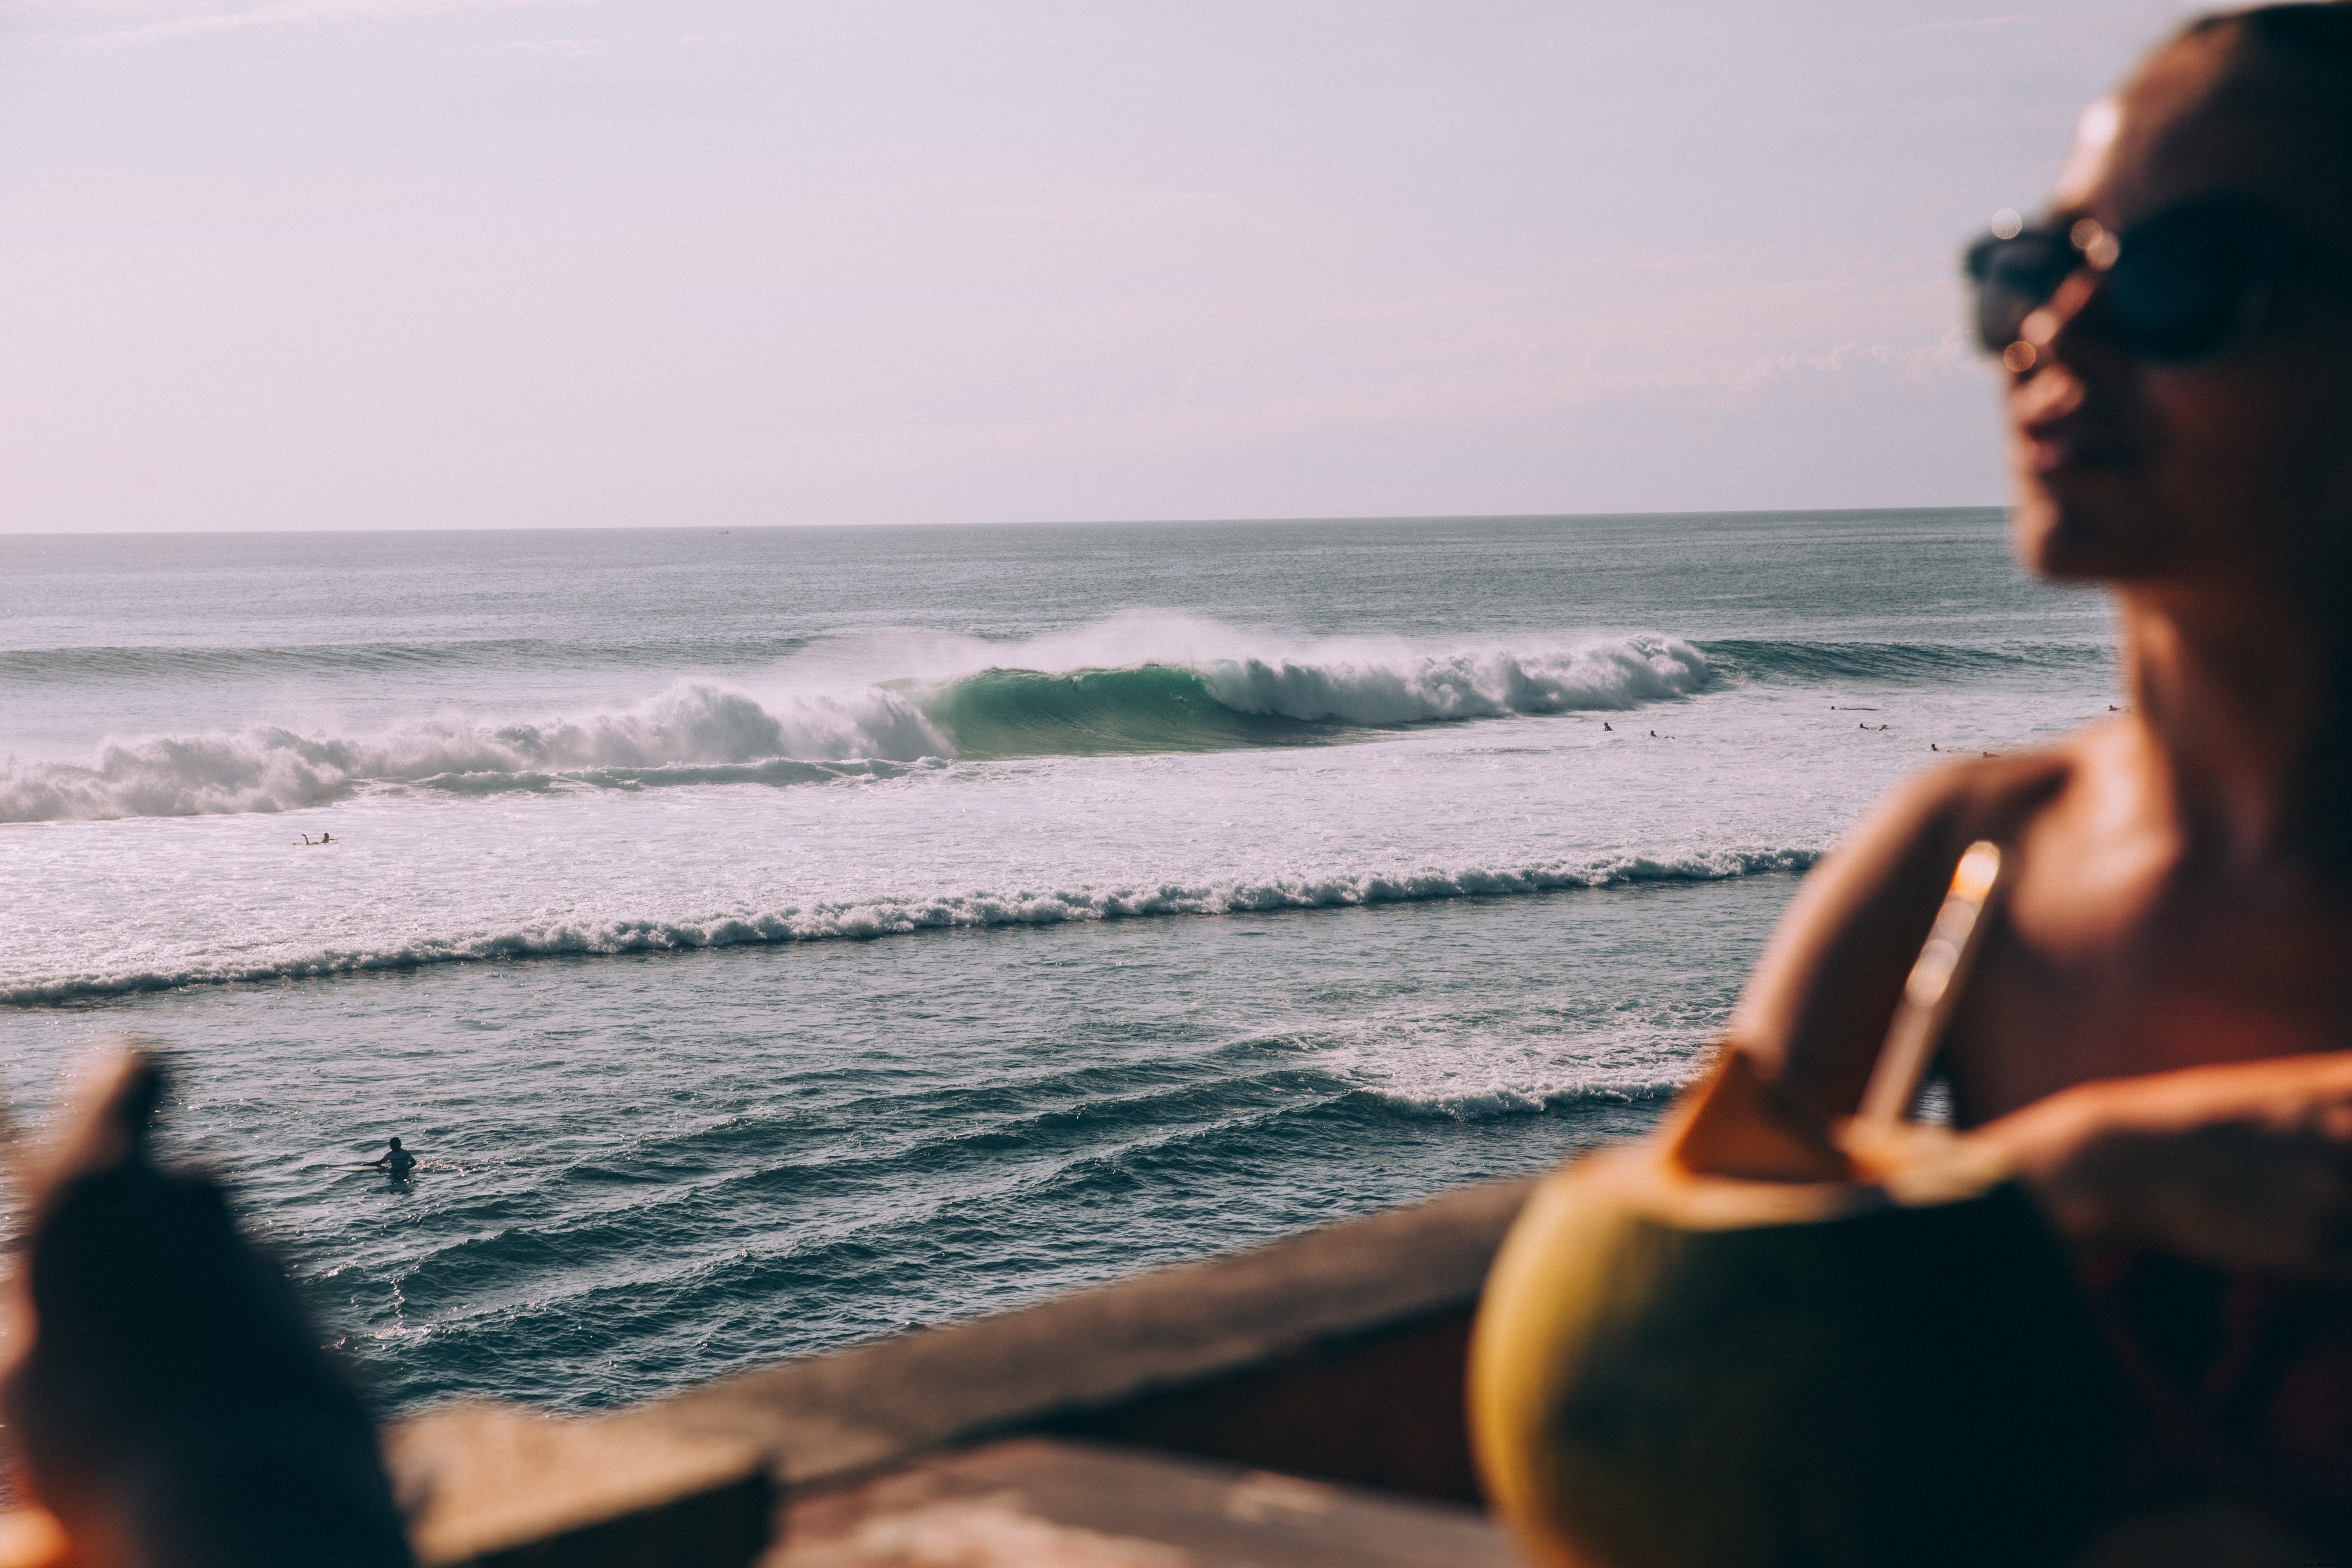 Rompiendo las olas del mar en la distancia detrás de la silueta de la mujer Foto